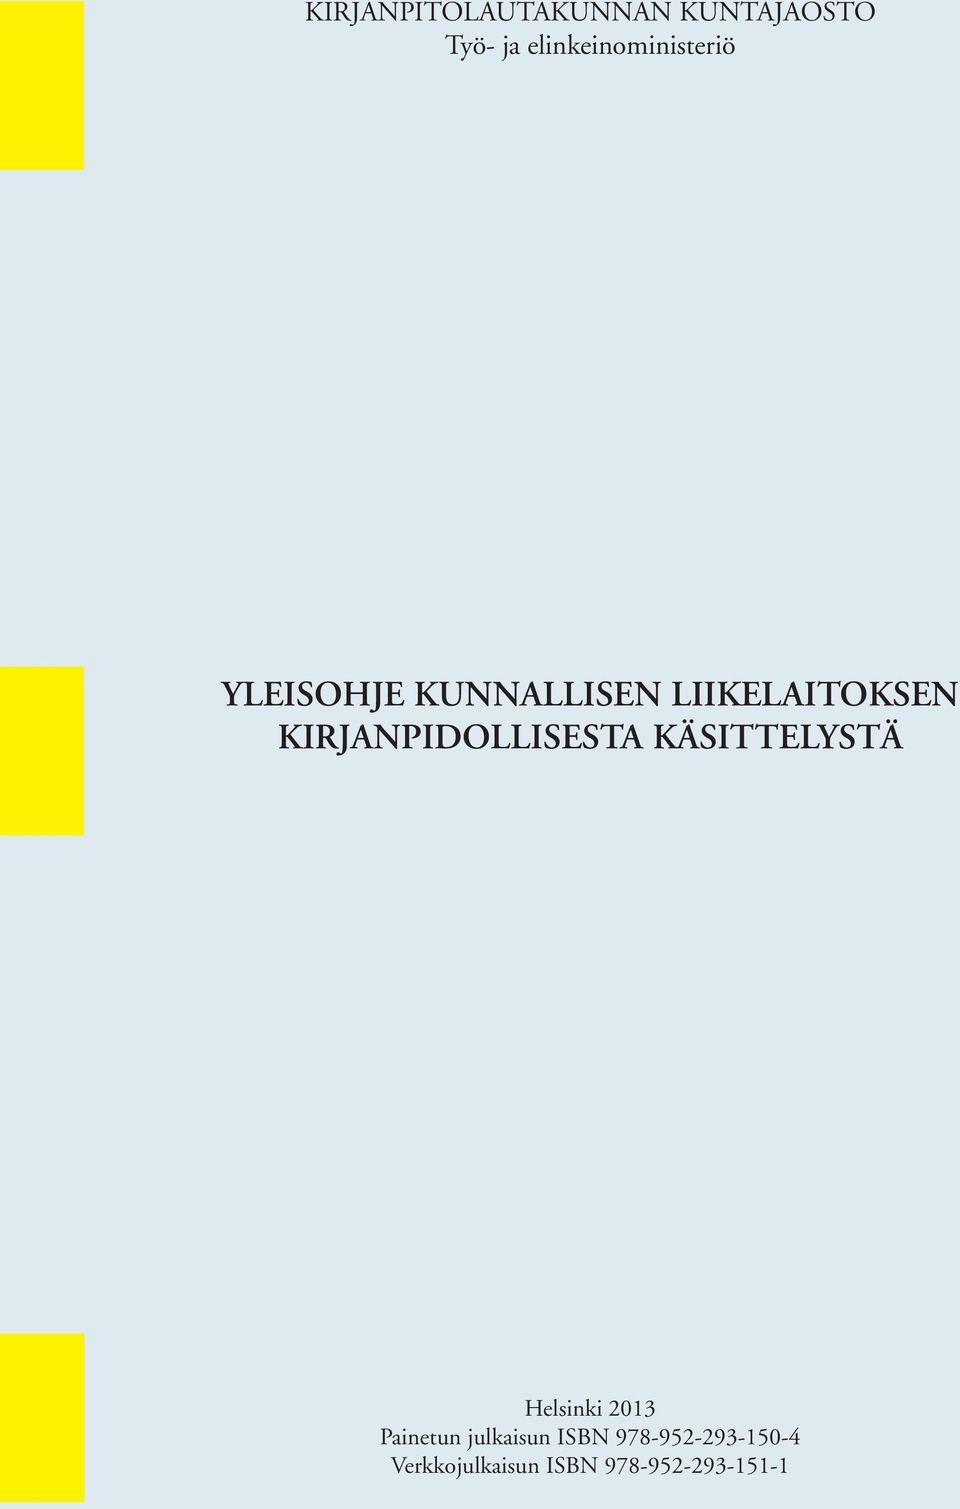 KIRJANPIDOLLISESTA KÄSITTELYSTÄ Helsinki 2013 Painetun